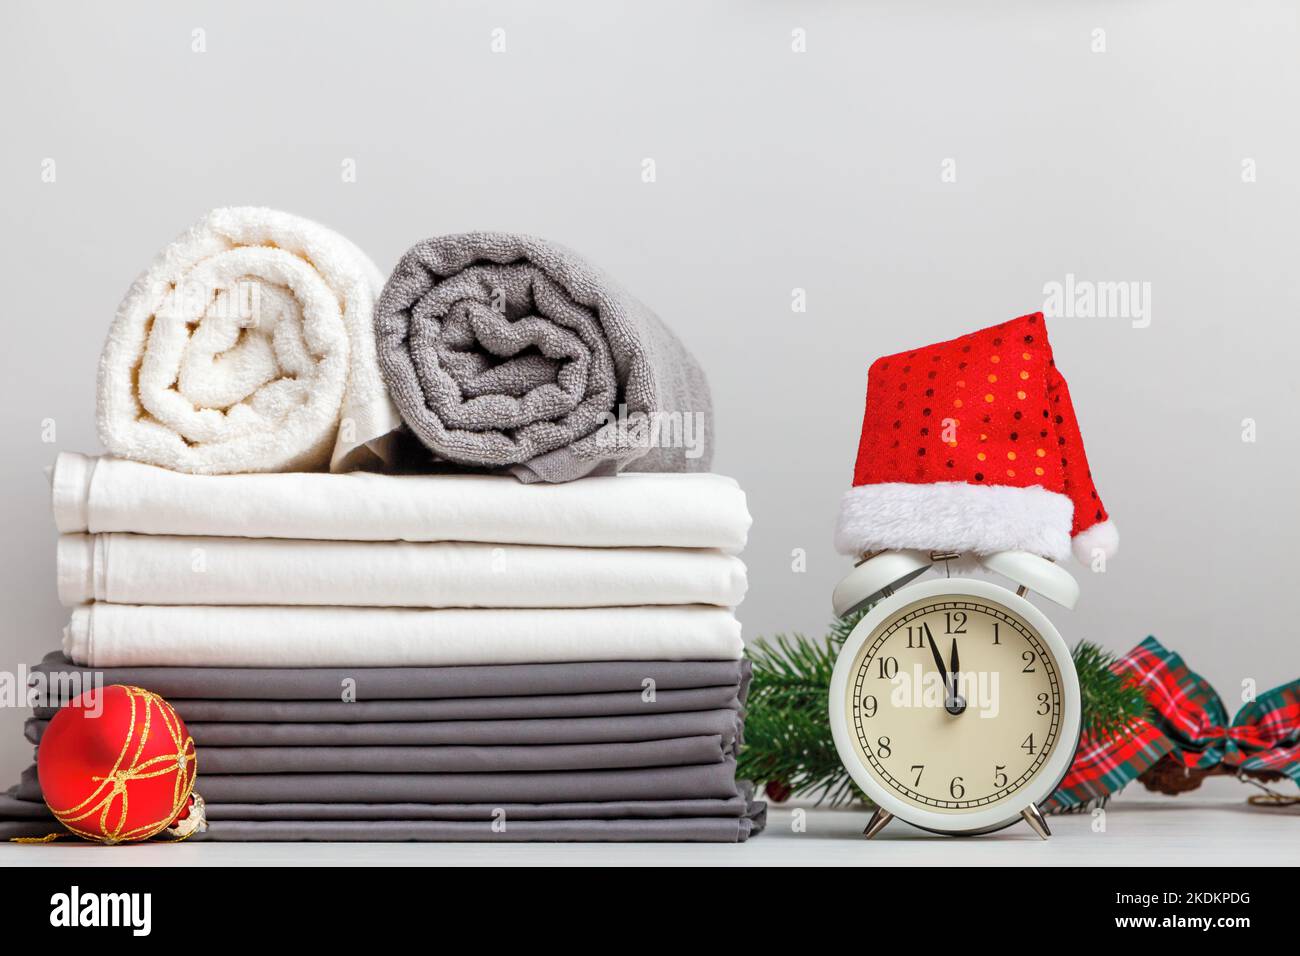 Stapel gefalteter Handtücherrollen und Bettwäsche, Laken auf dem Tisch mit weihnachtlicher Einrichtung und Wecker Stockfoto